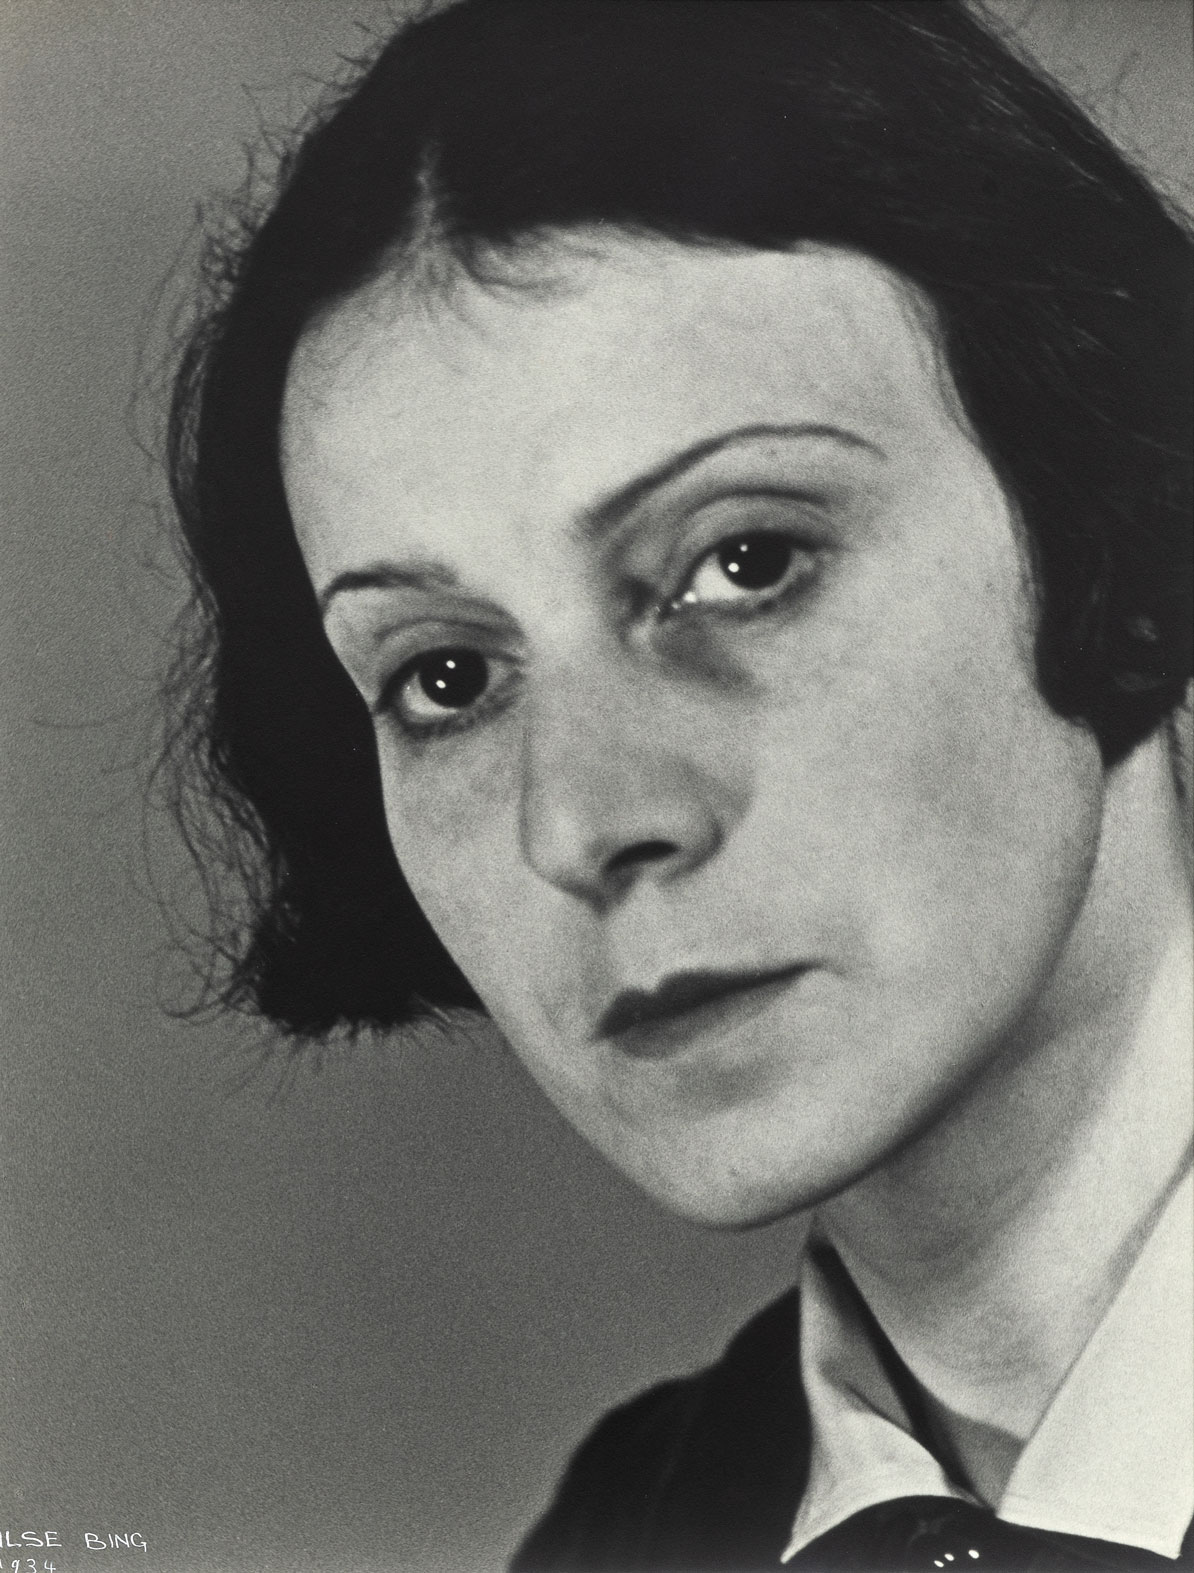 Autorretrato [Self-portrait], 1934